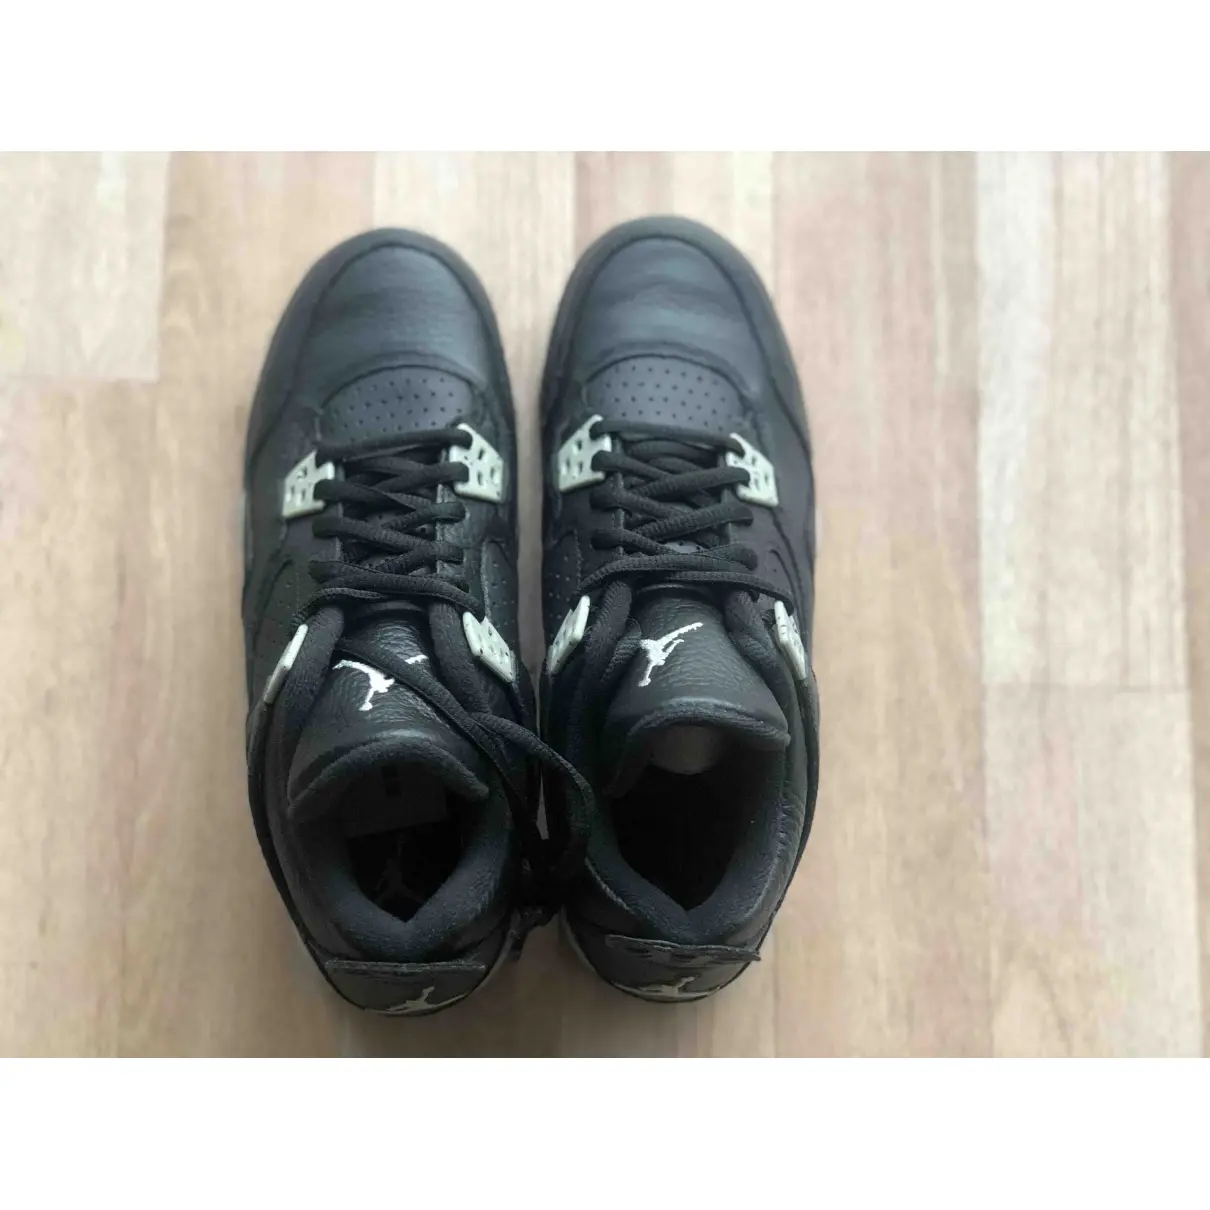 Buy JORDAN Air Jordan 4 leather trainers online